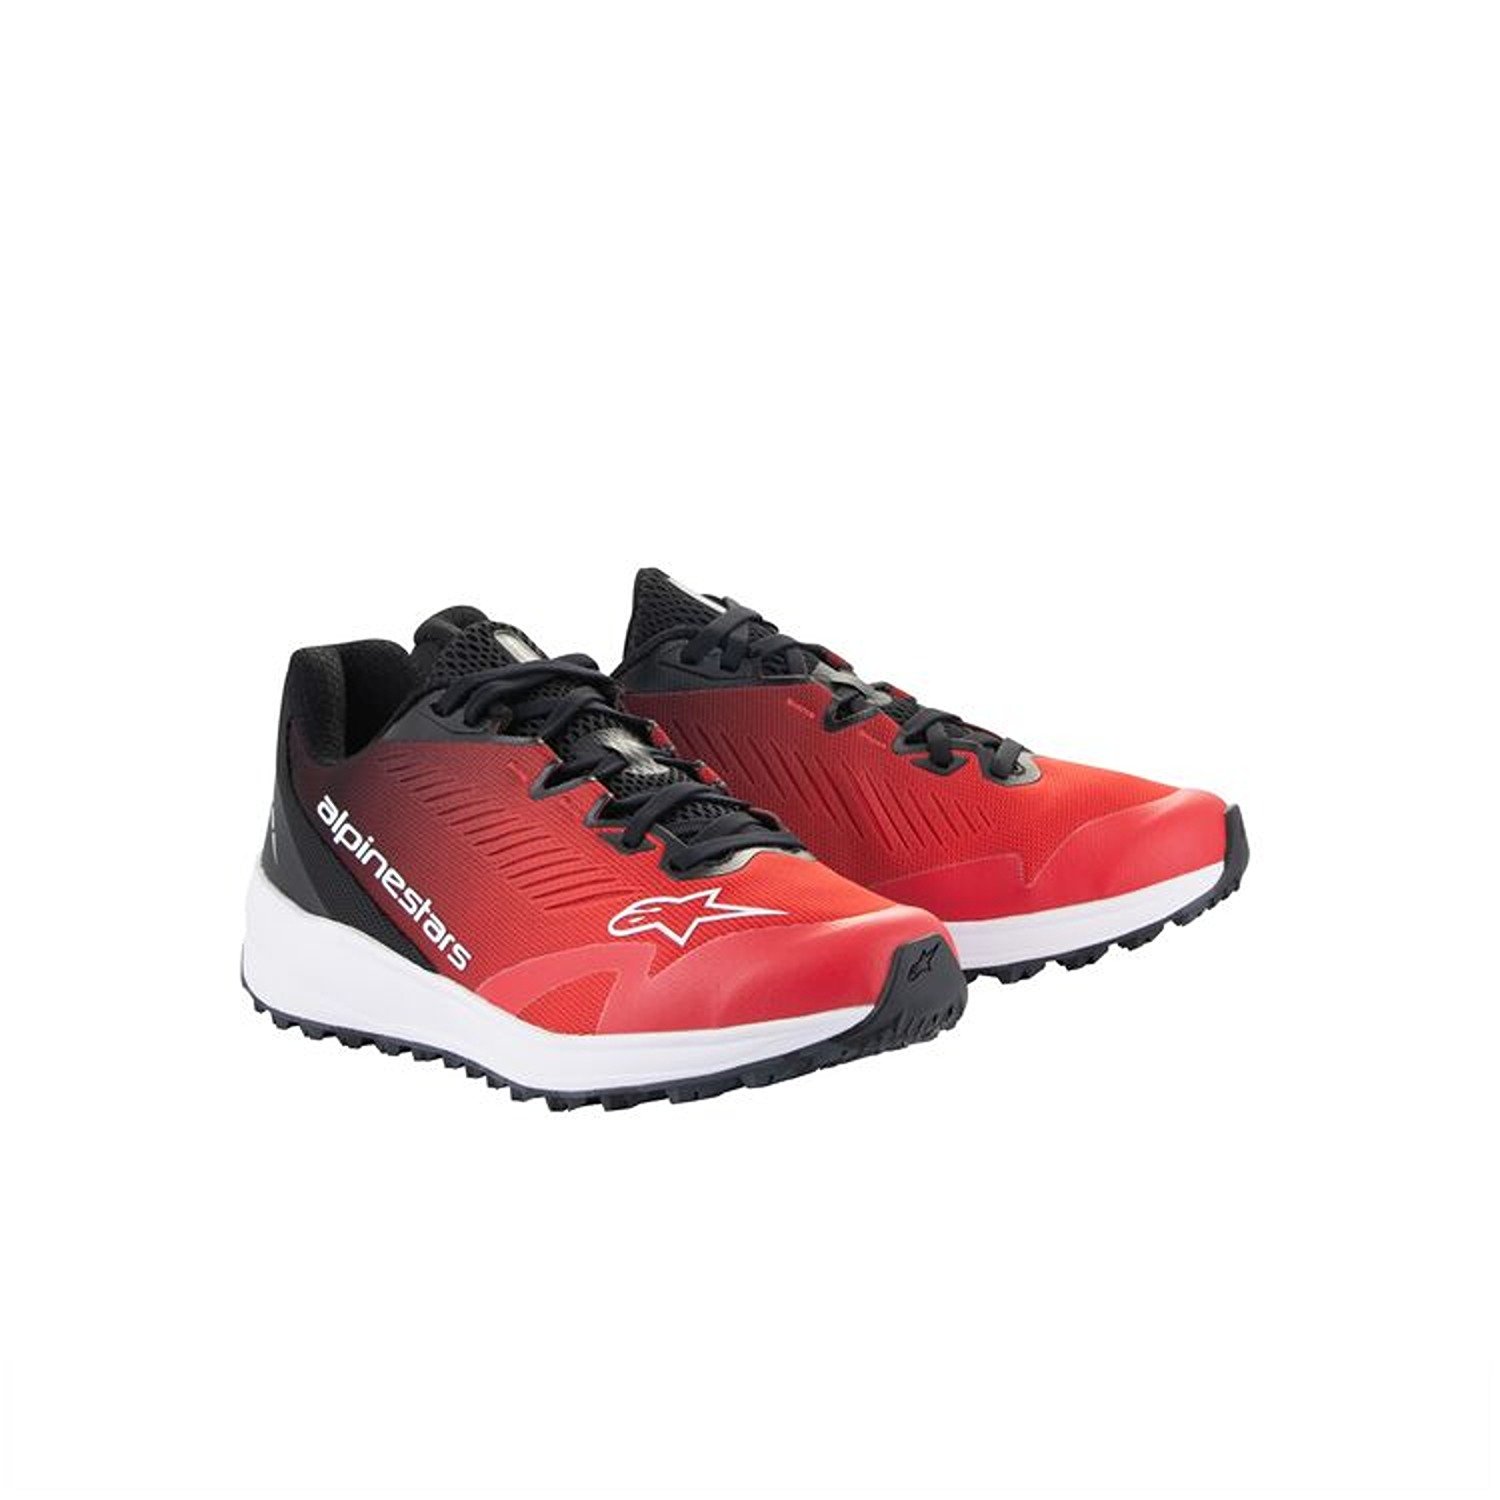 Image of Alpinestars Meta Road V2 Shoes Red Black White Größe US 4